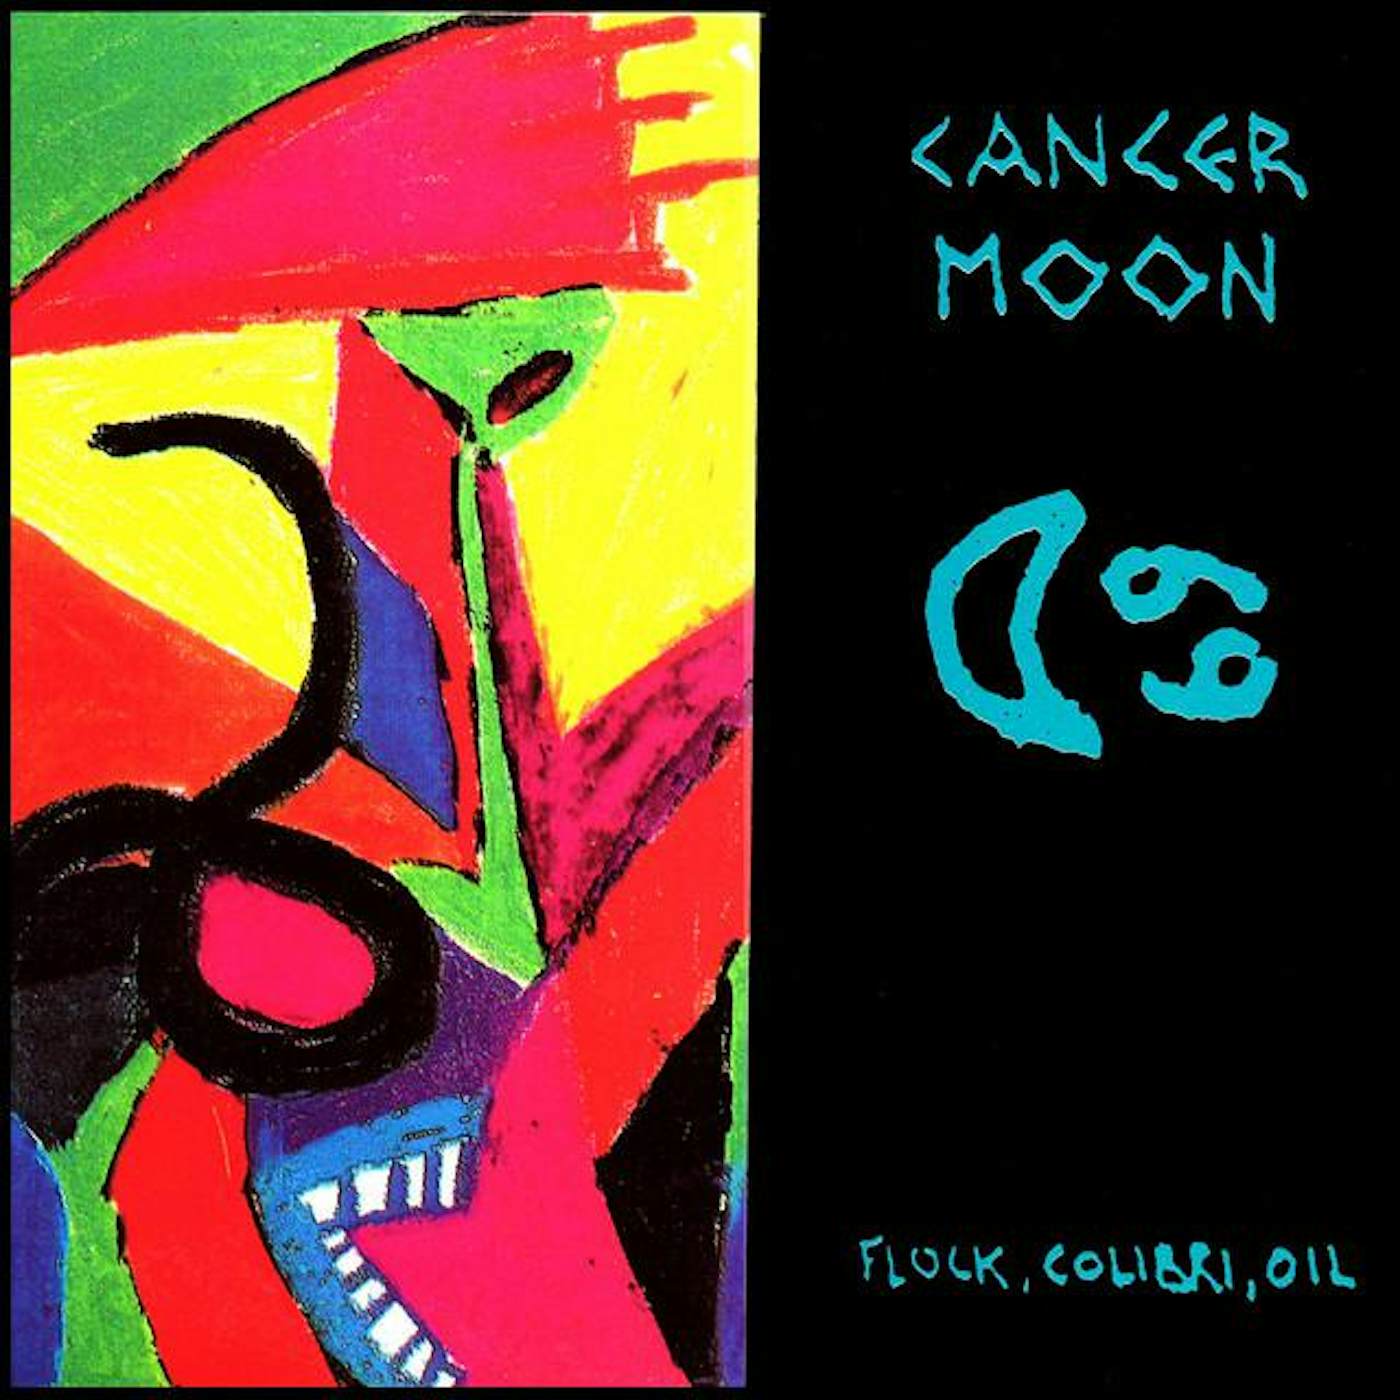 Cancer Moon